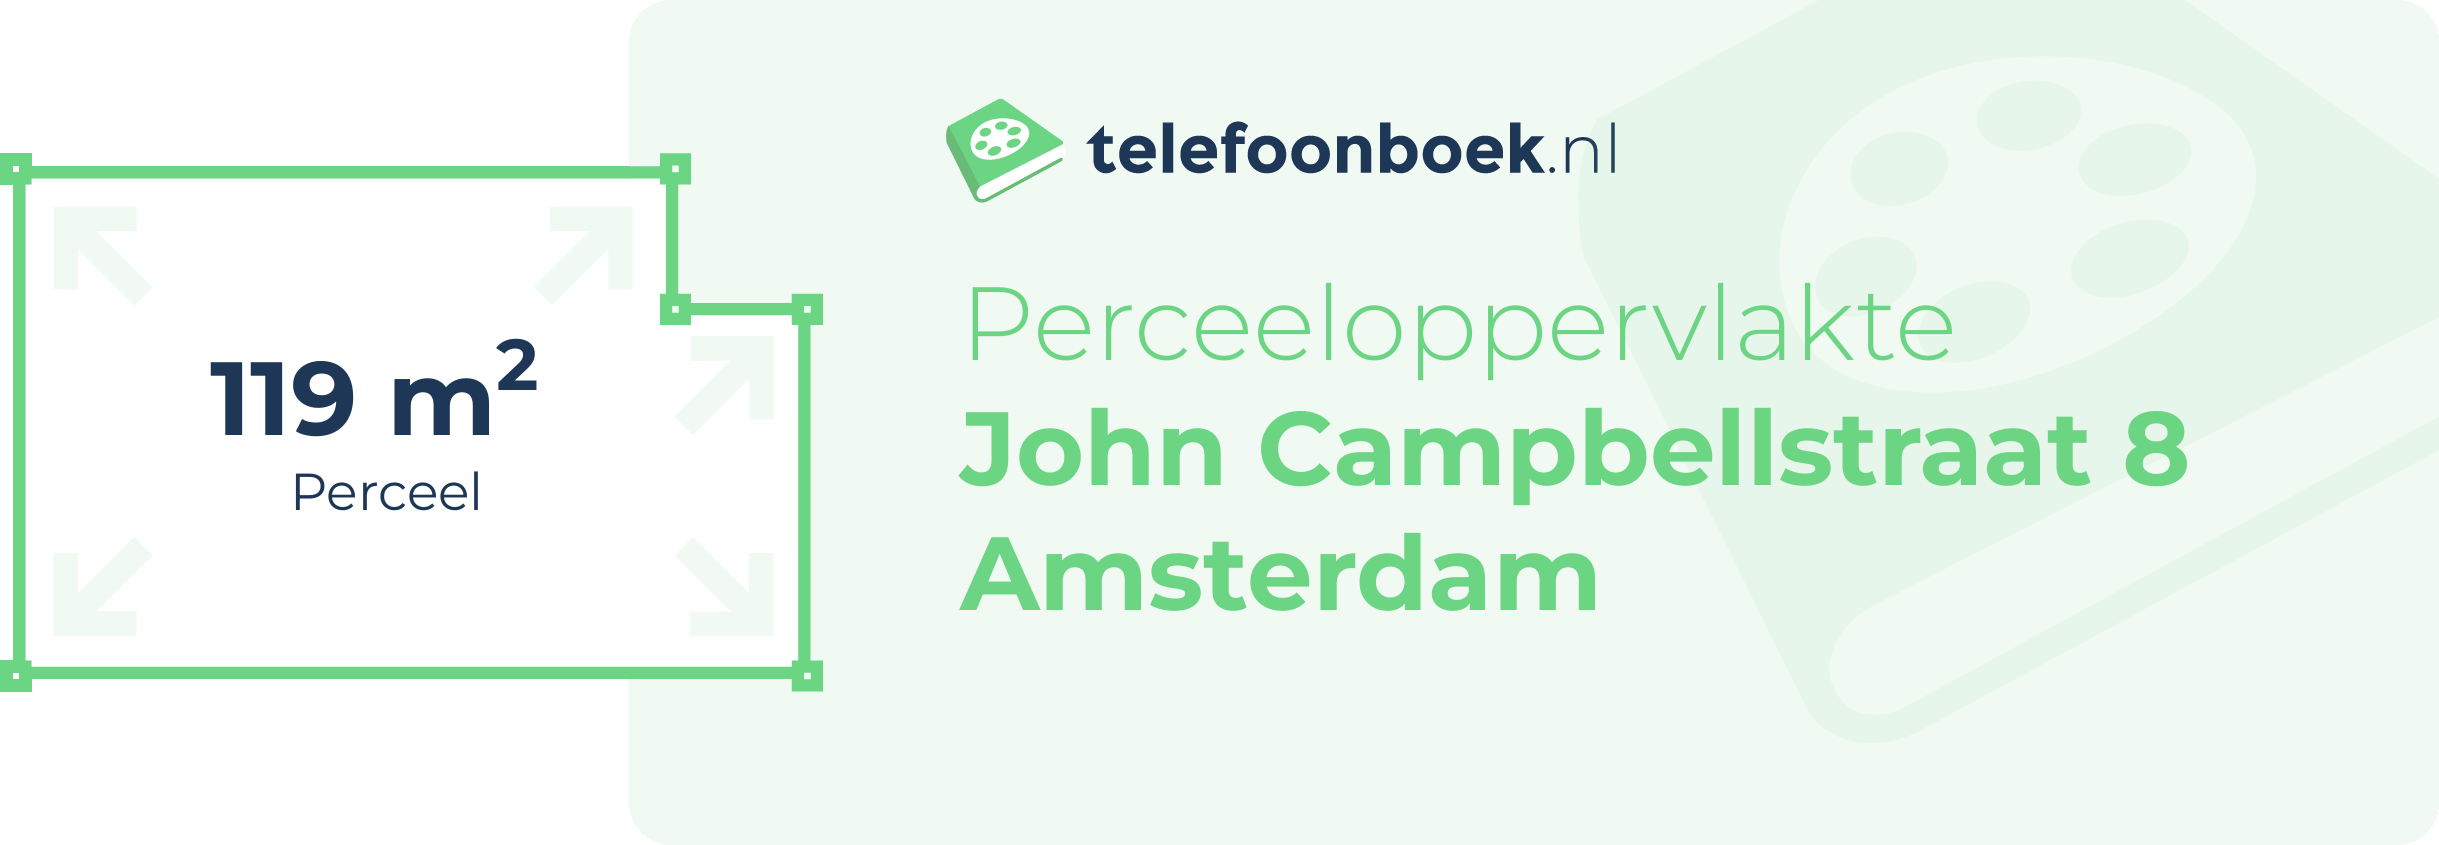 Perceeloppervlakte John Campbellstraat 8 Amsterdam